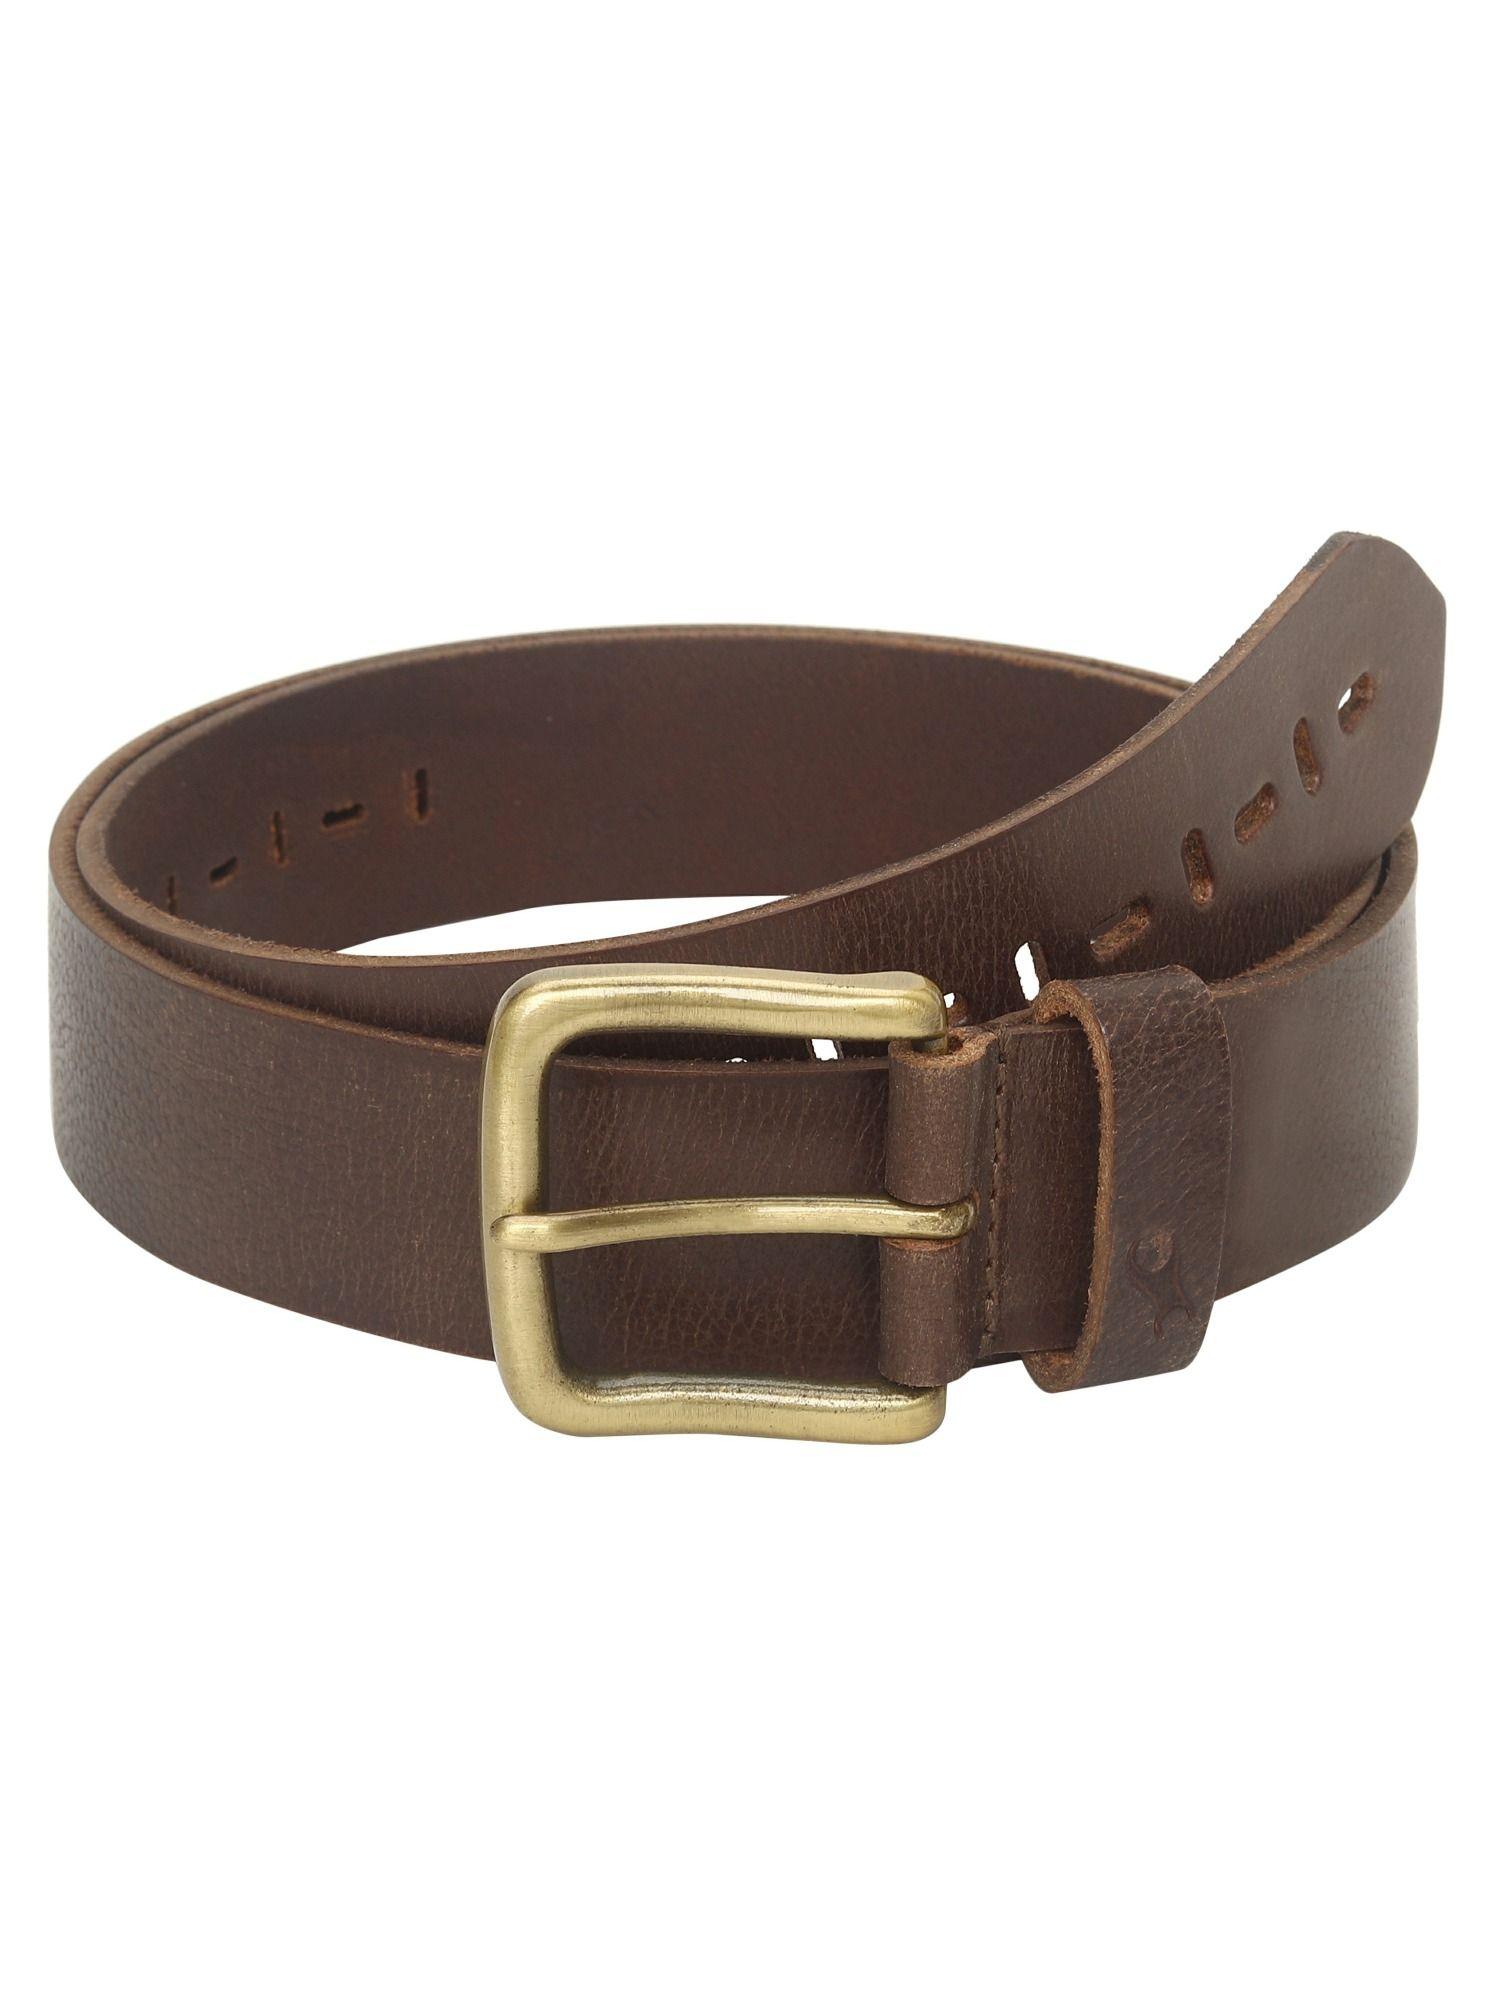 semi formal brown belt